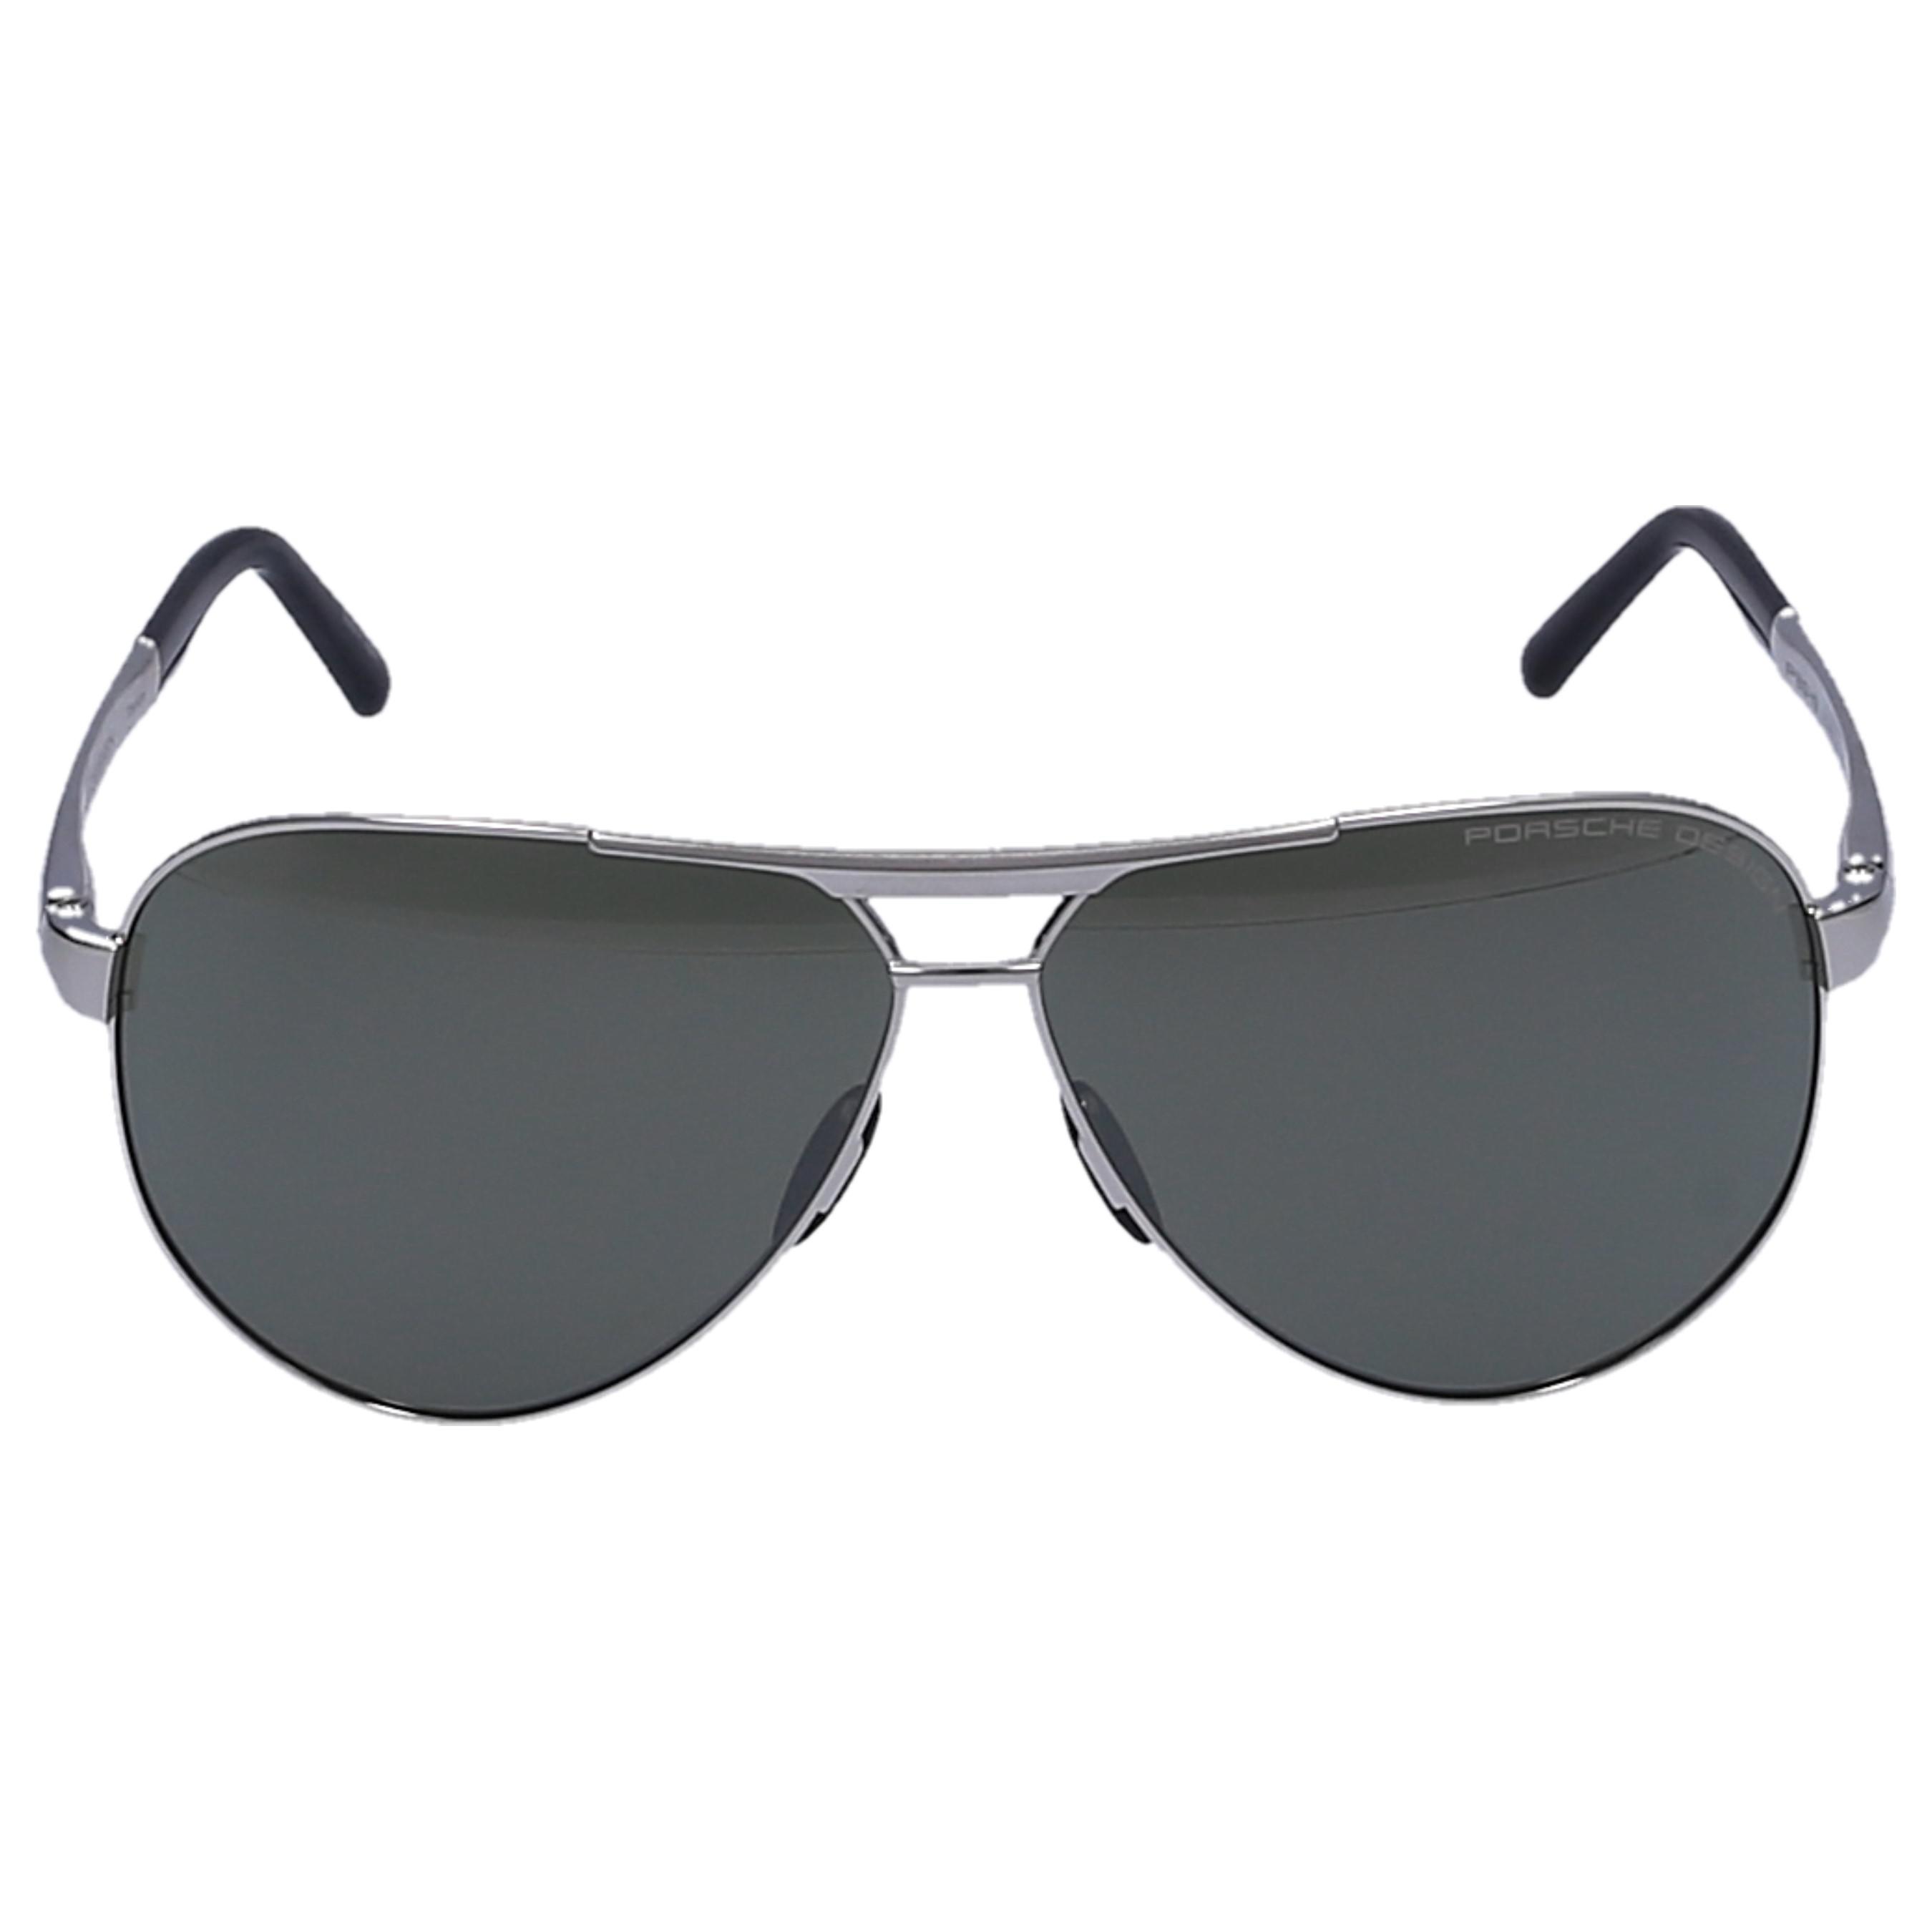 Lyst - Porsche Design Sunglasses Aviator 8648 Titan Silver in Gray for Men